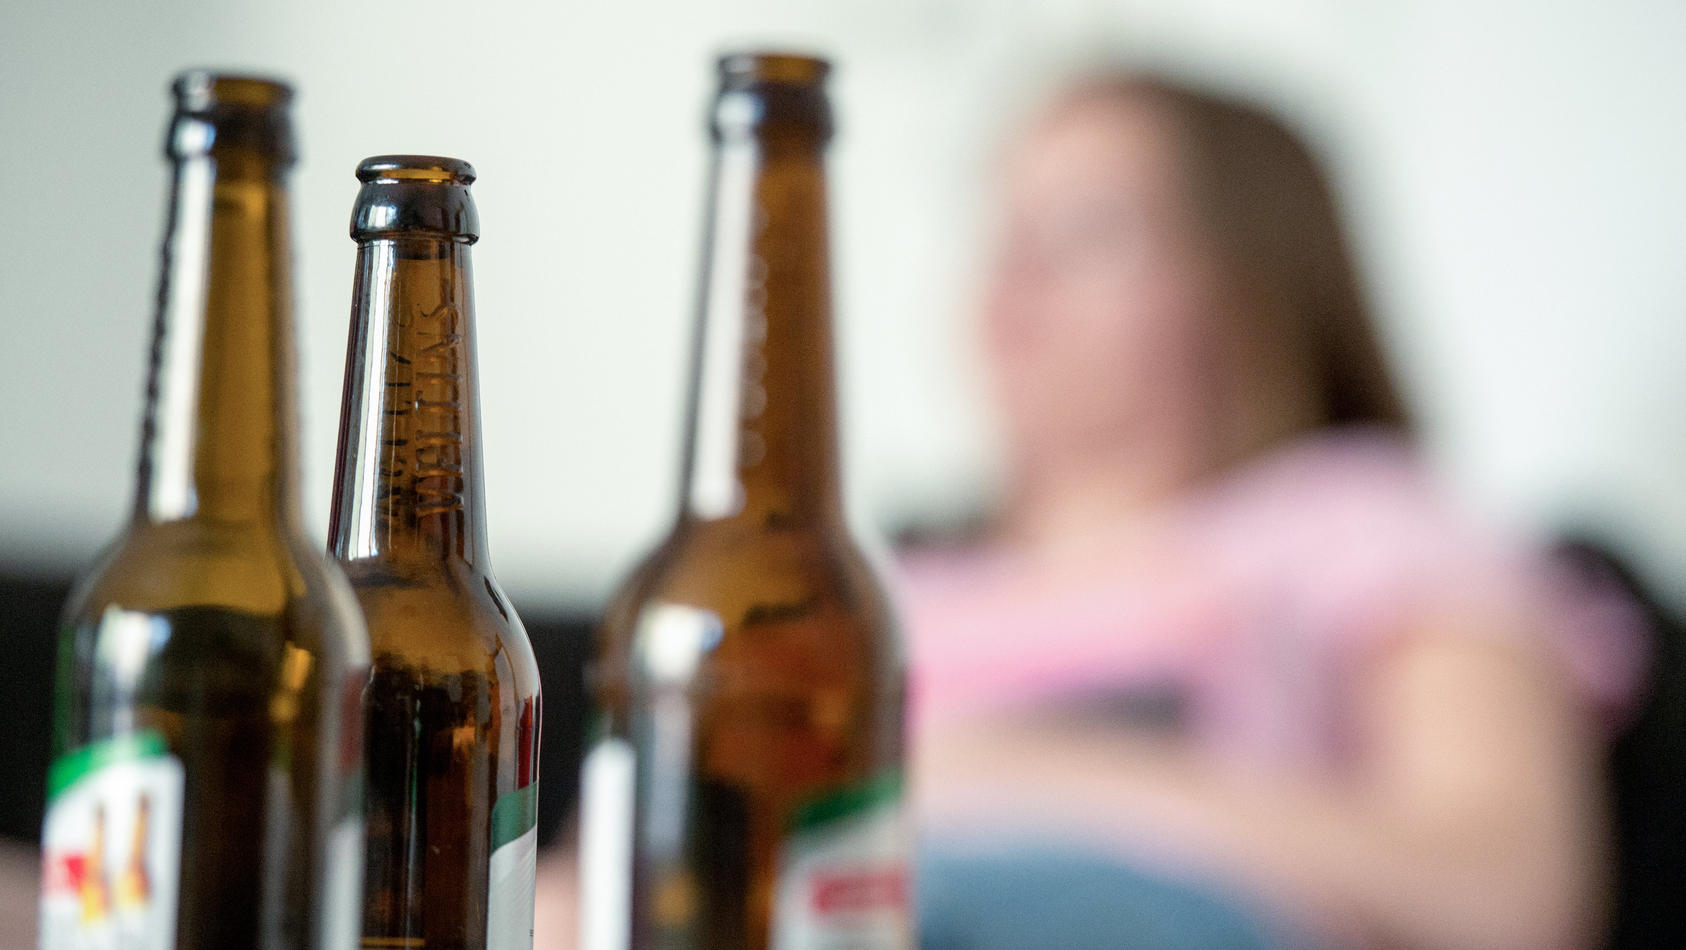 SYMBOLBILD - 28.05.2016, Berlin: Eine junge Frau sitzt hinter leeren Bierflaschen. Die Corona-Pandemie erhöht Experten zufolge das Risiko für Alkohol- und Drogenmissbrauch sowie das Zocken im Online-Casino. (zu dpa: «Suchthilfe zum Internationalen Ta